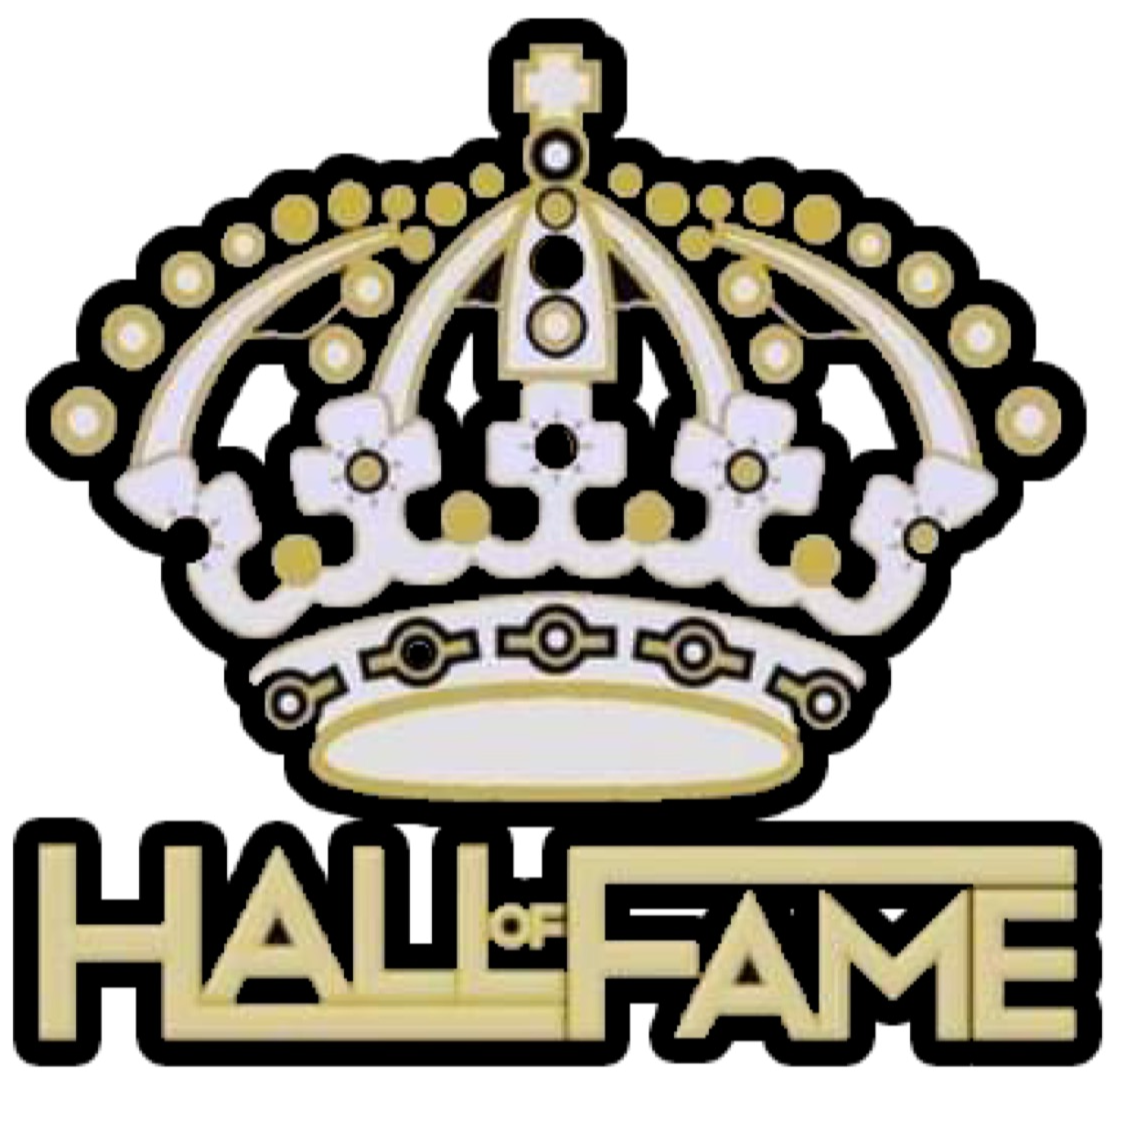 Hall 0f Fame